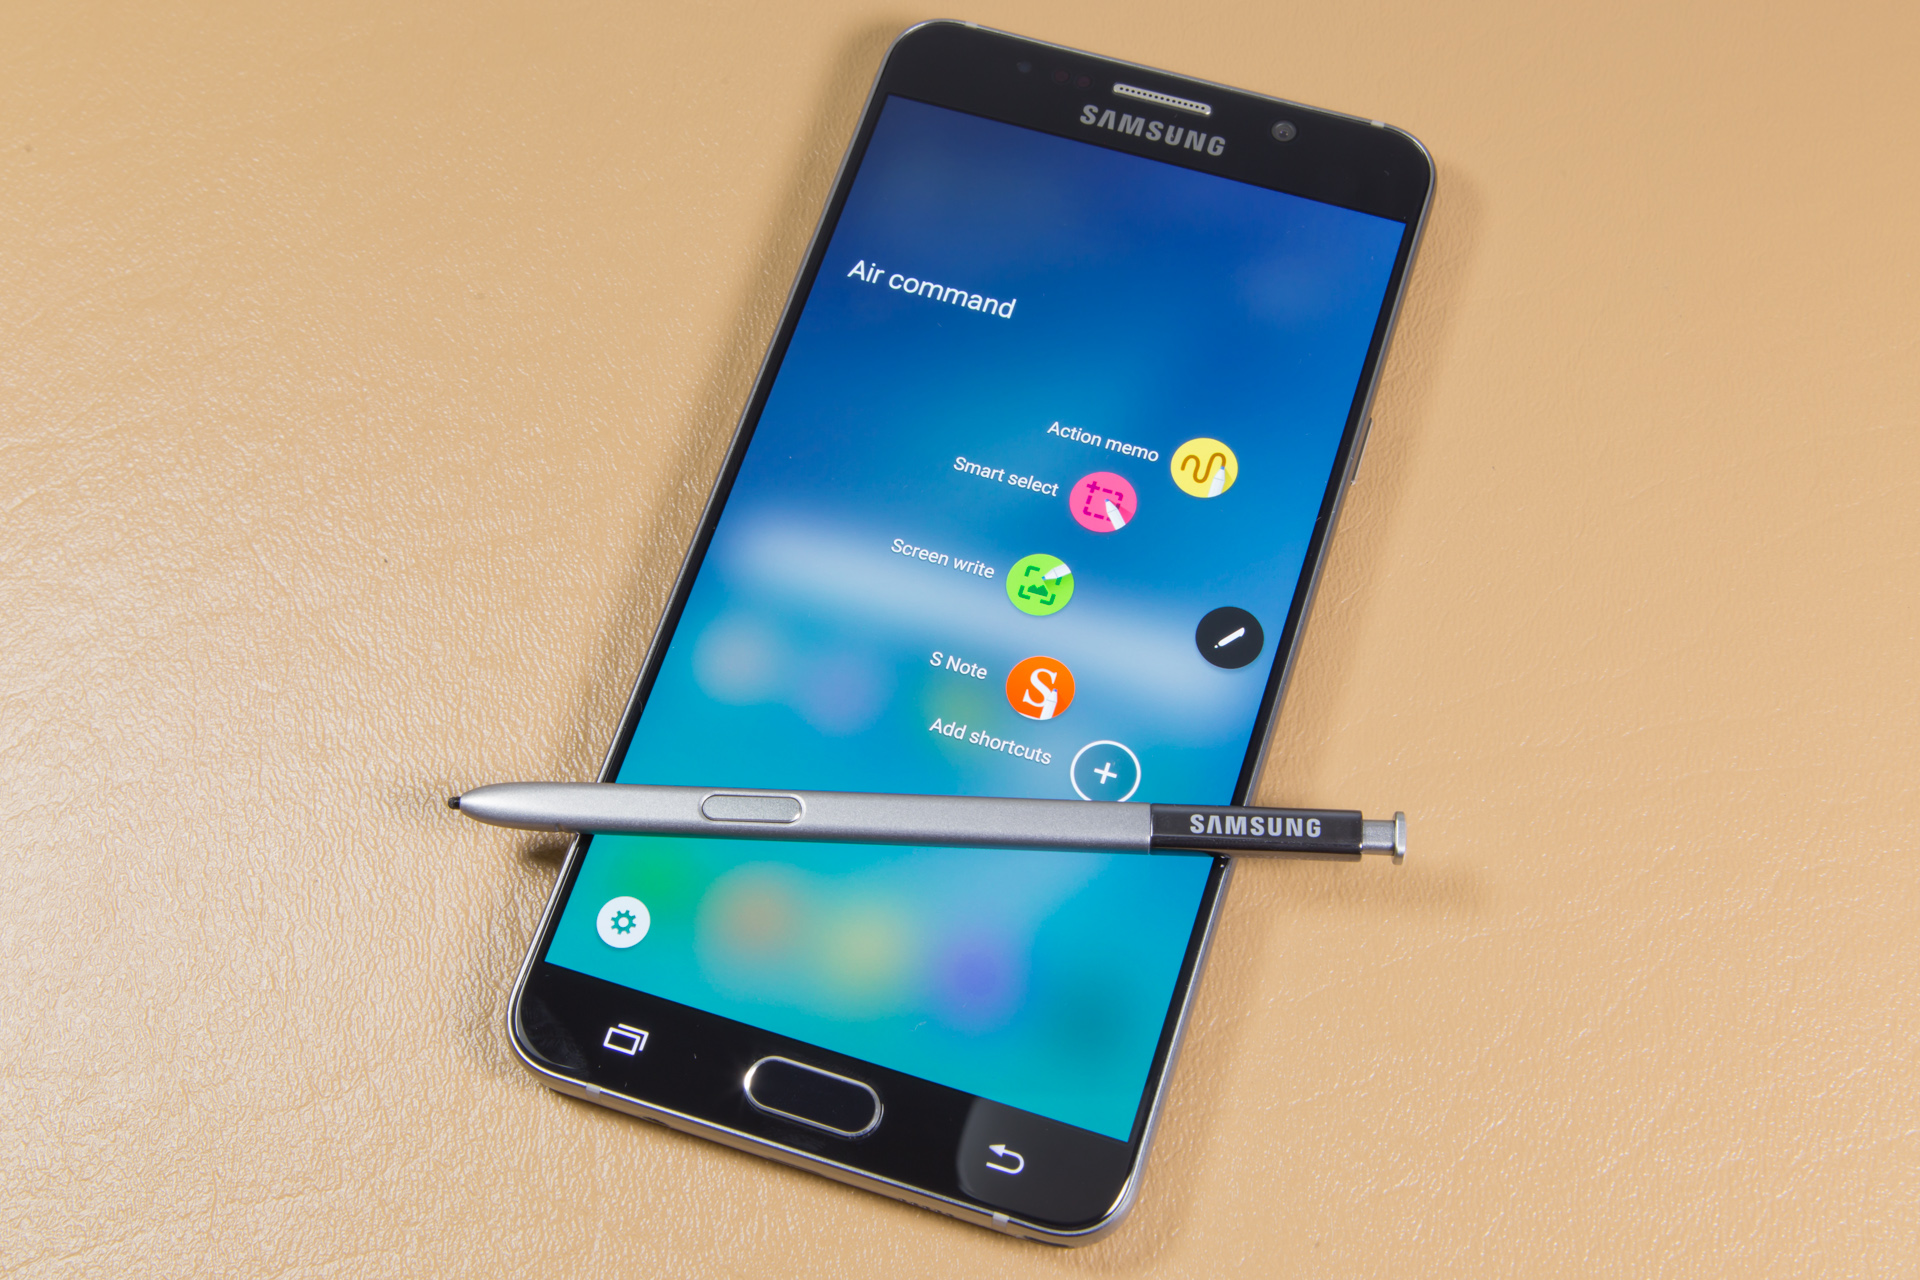 Cách reset khôi phục lại cài đặt cho Samsung Galaxy Note 5